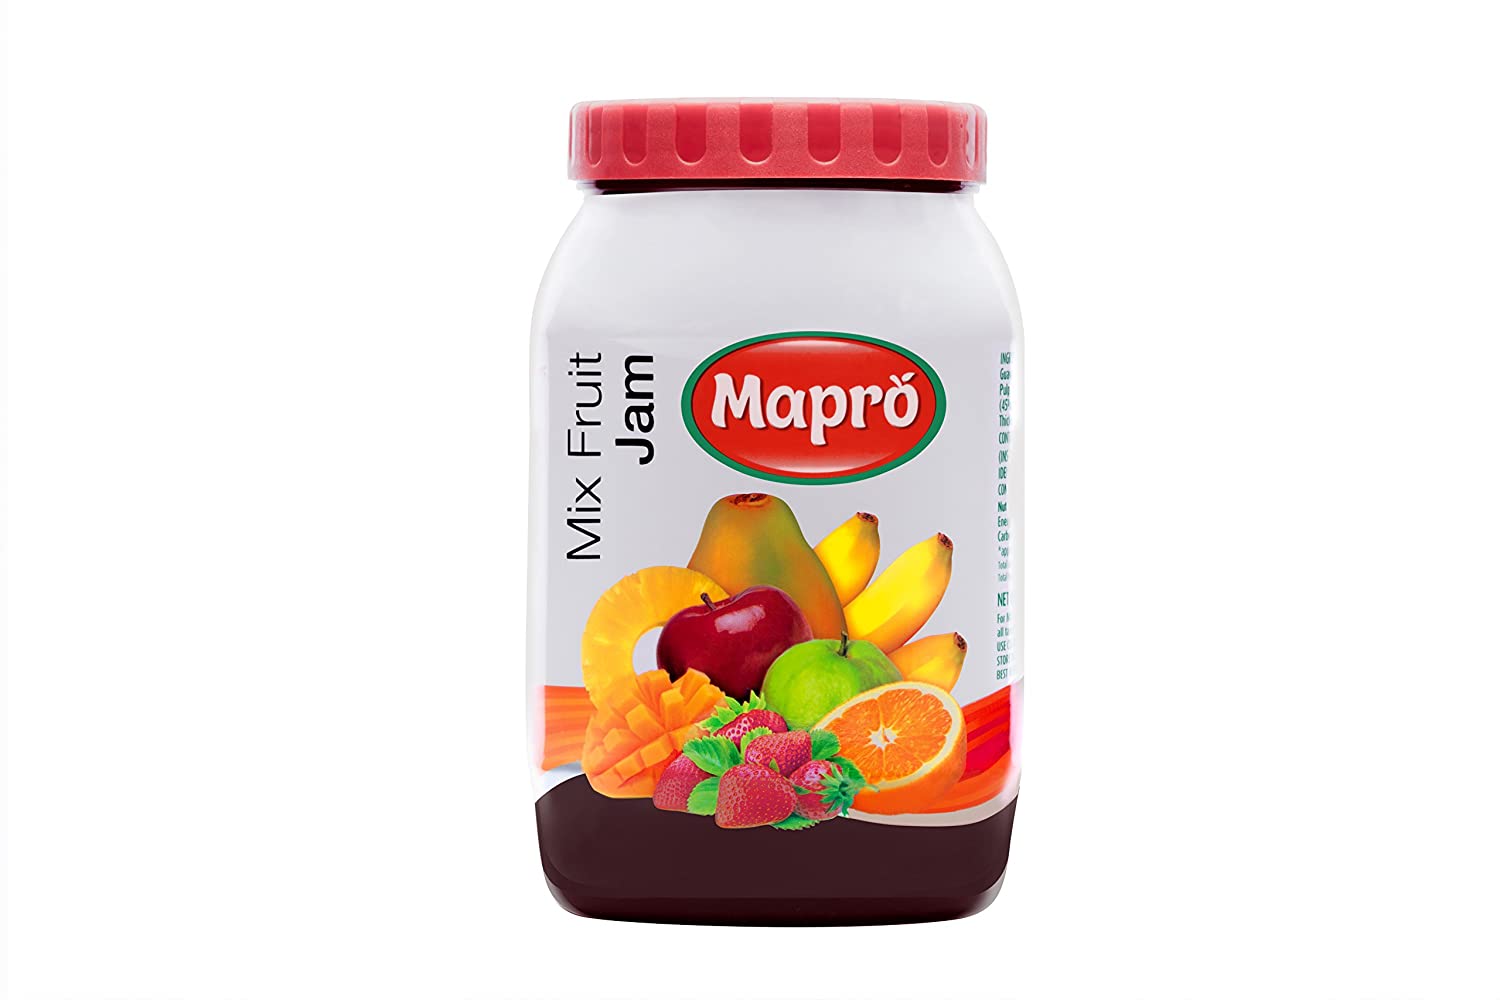 Mapro Mix Fruit Jam Image